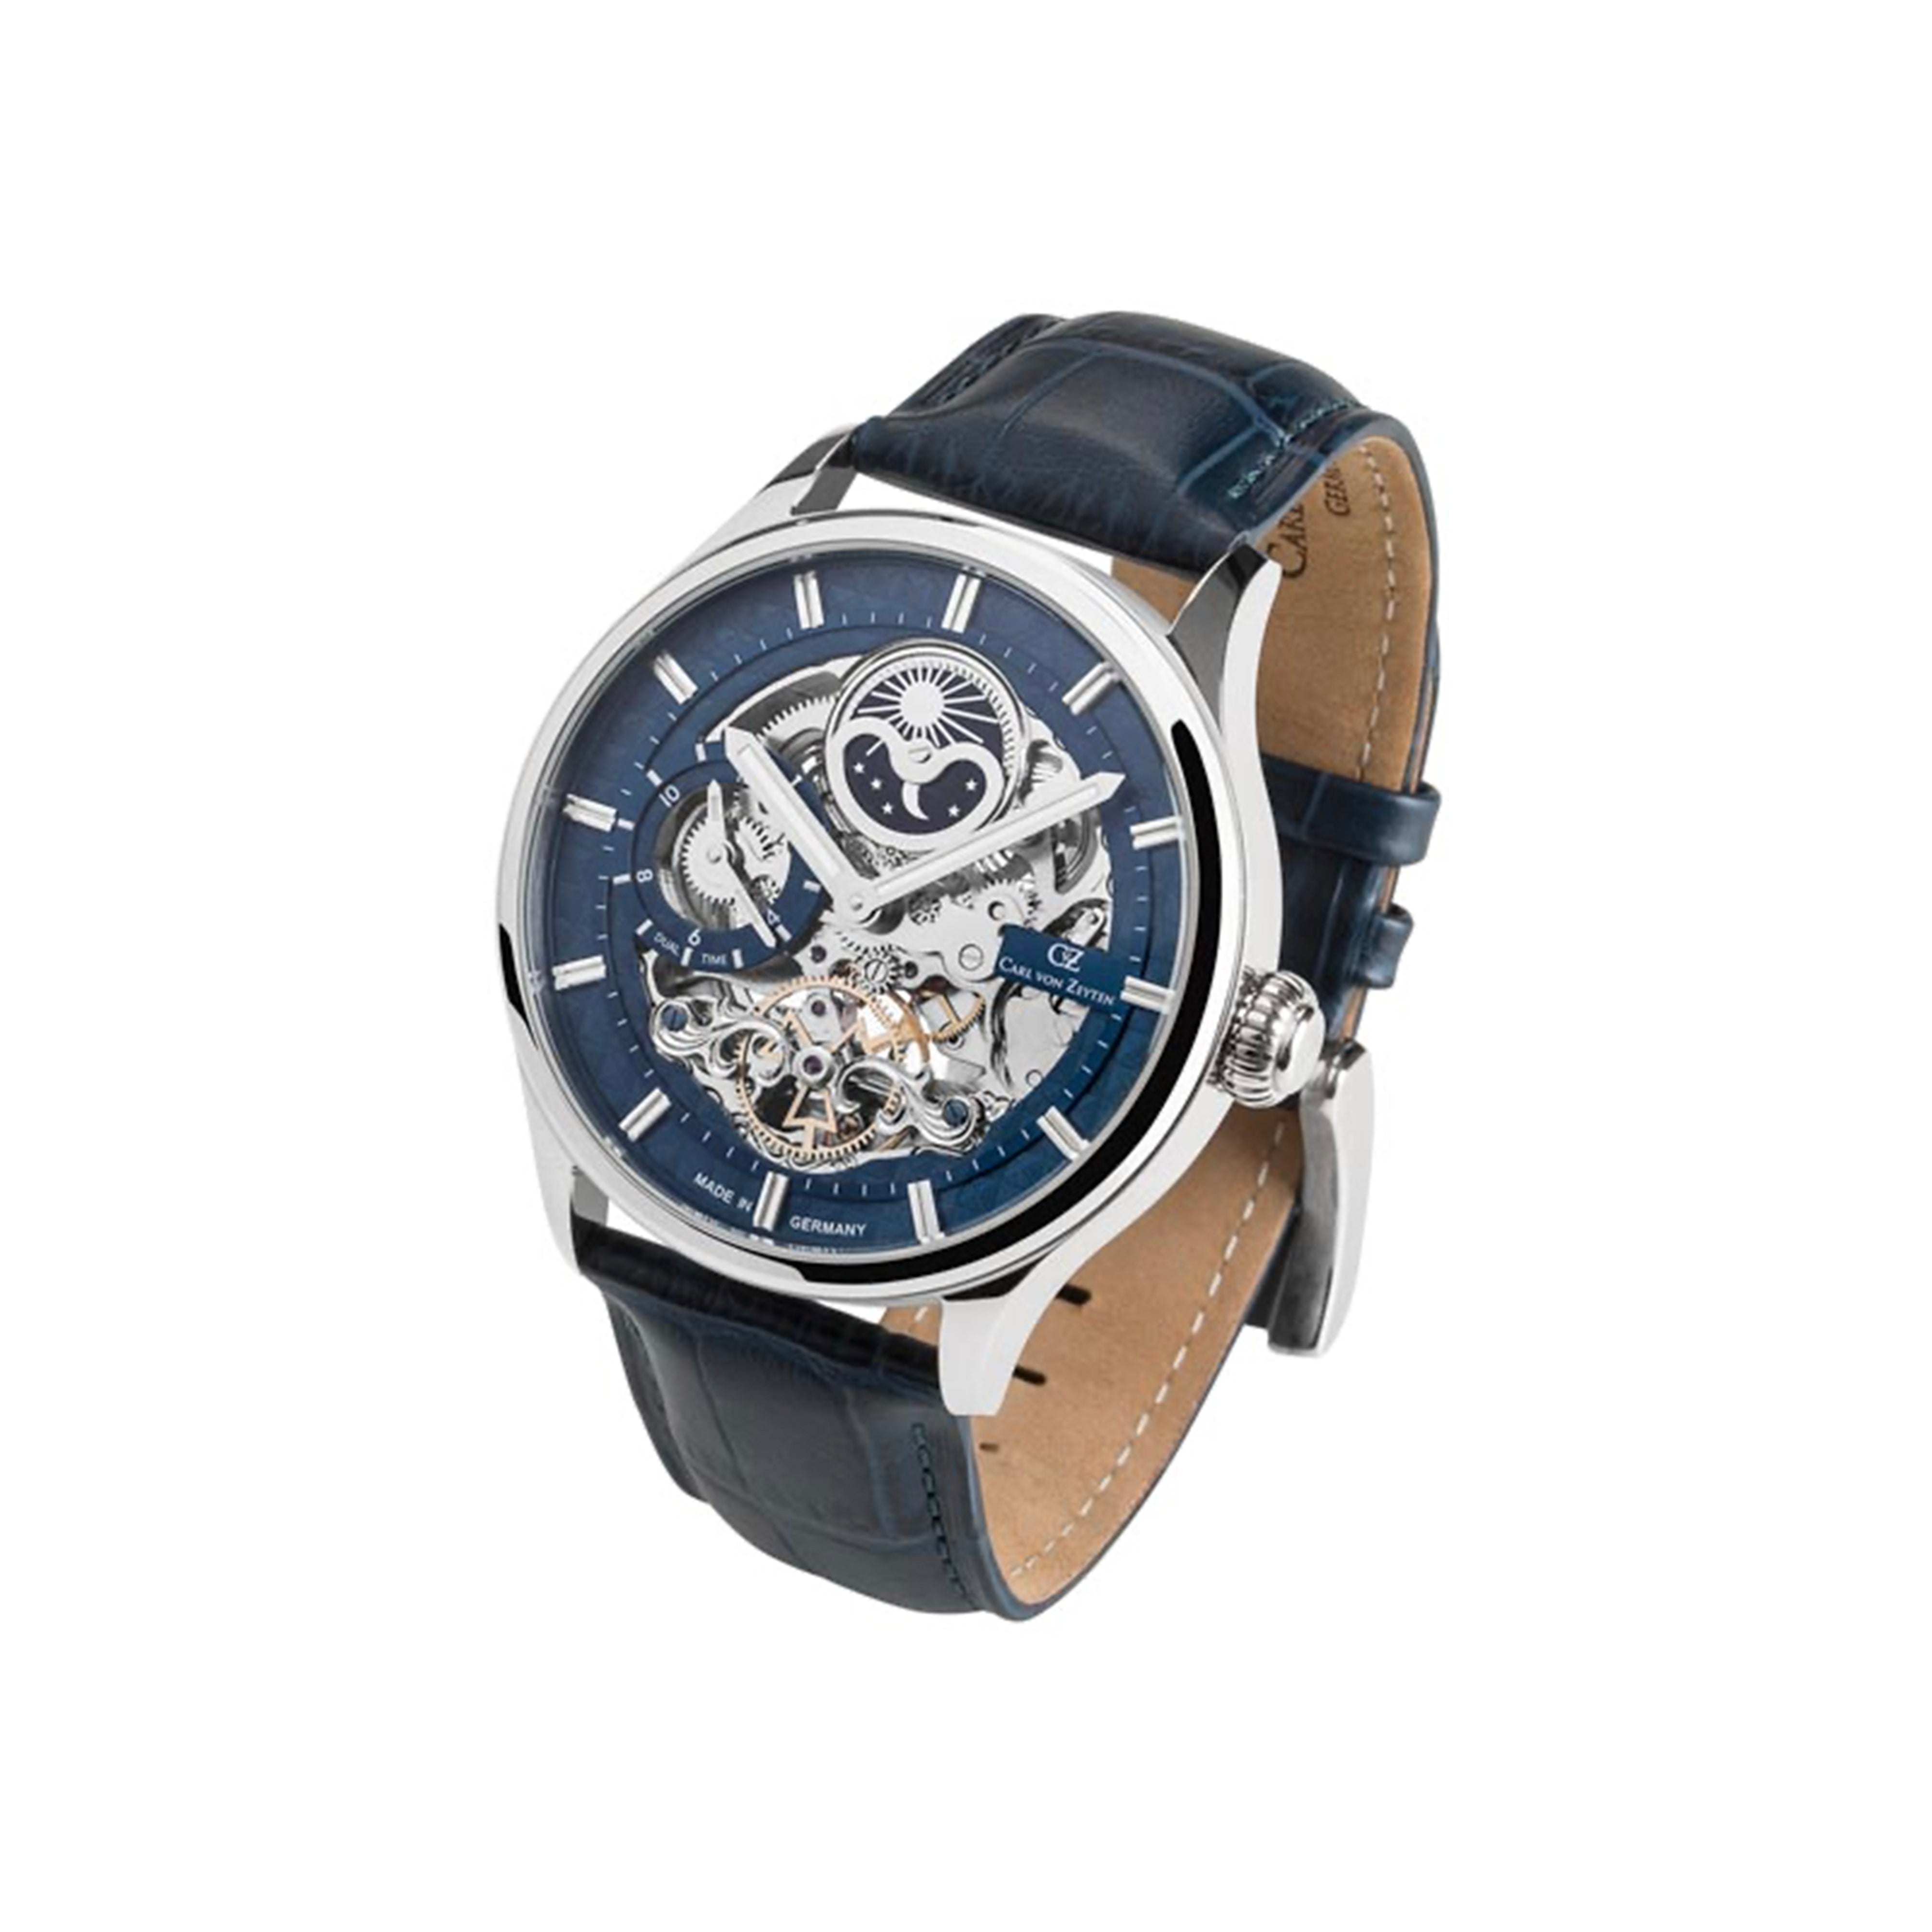 Carl von Zeyten Neustadt Automatic Watch